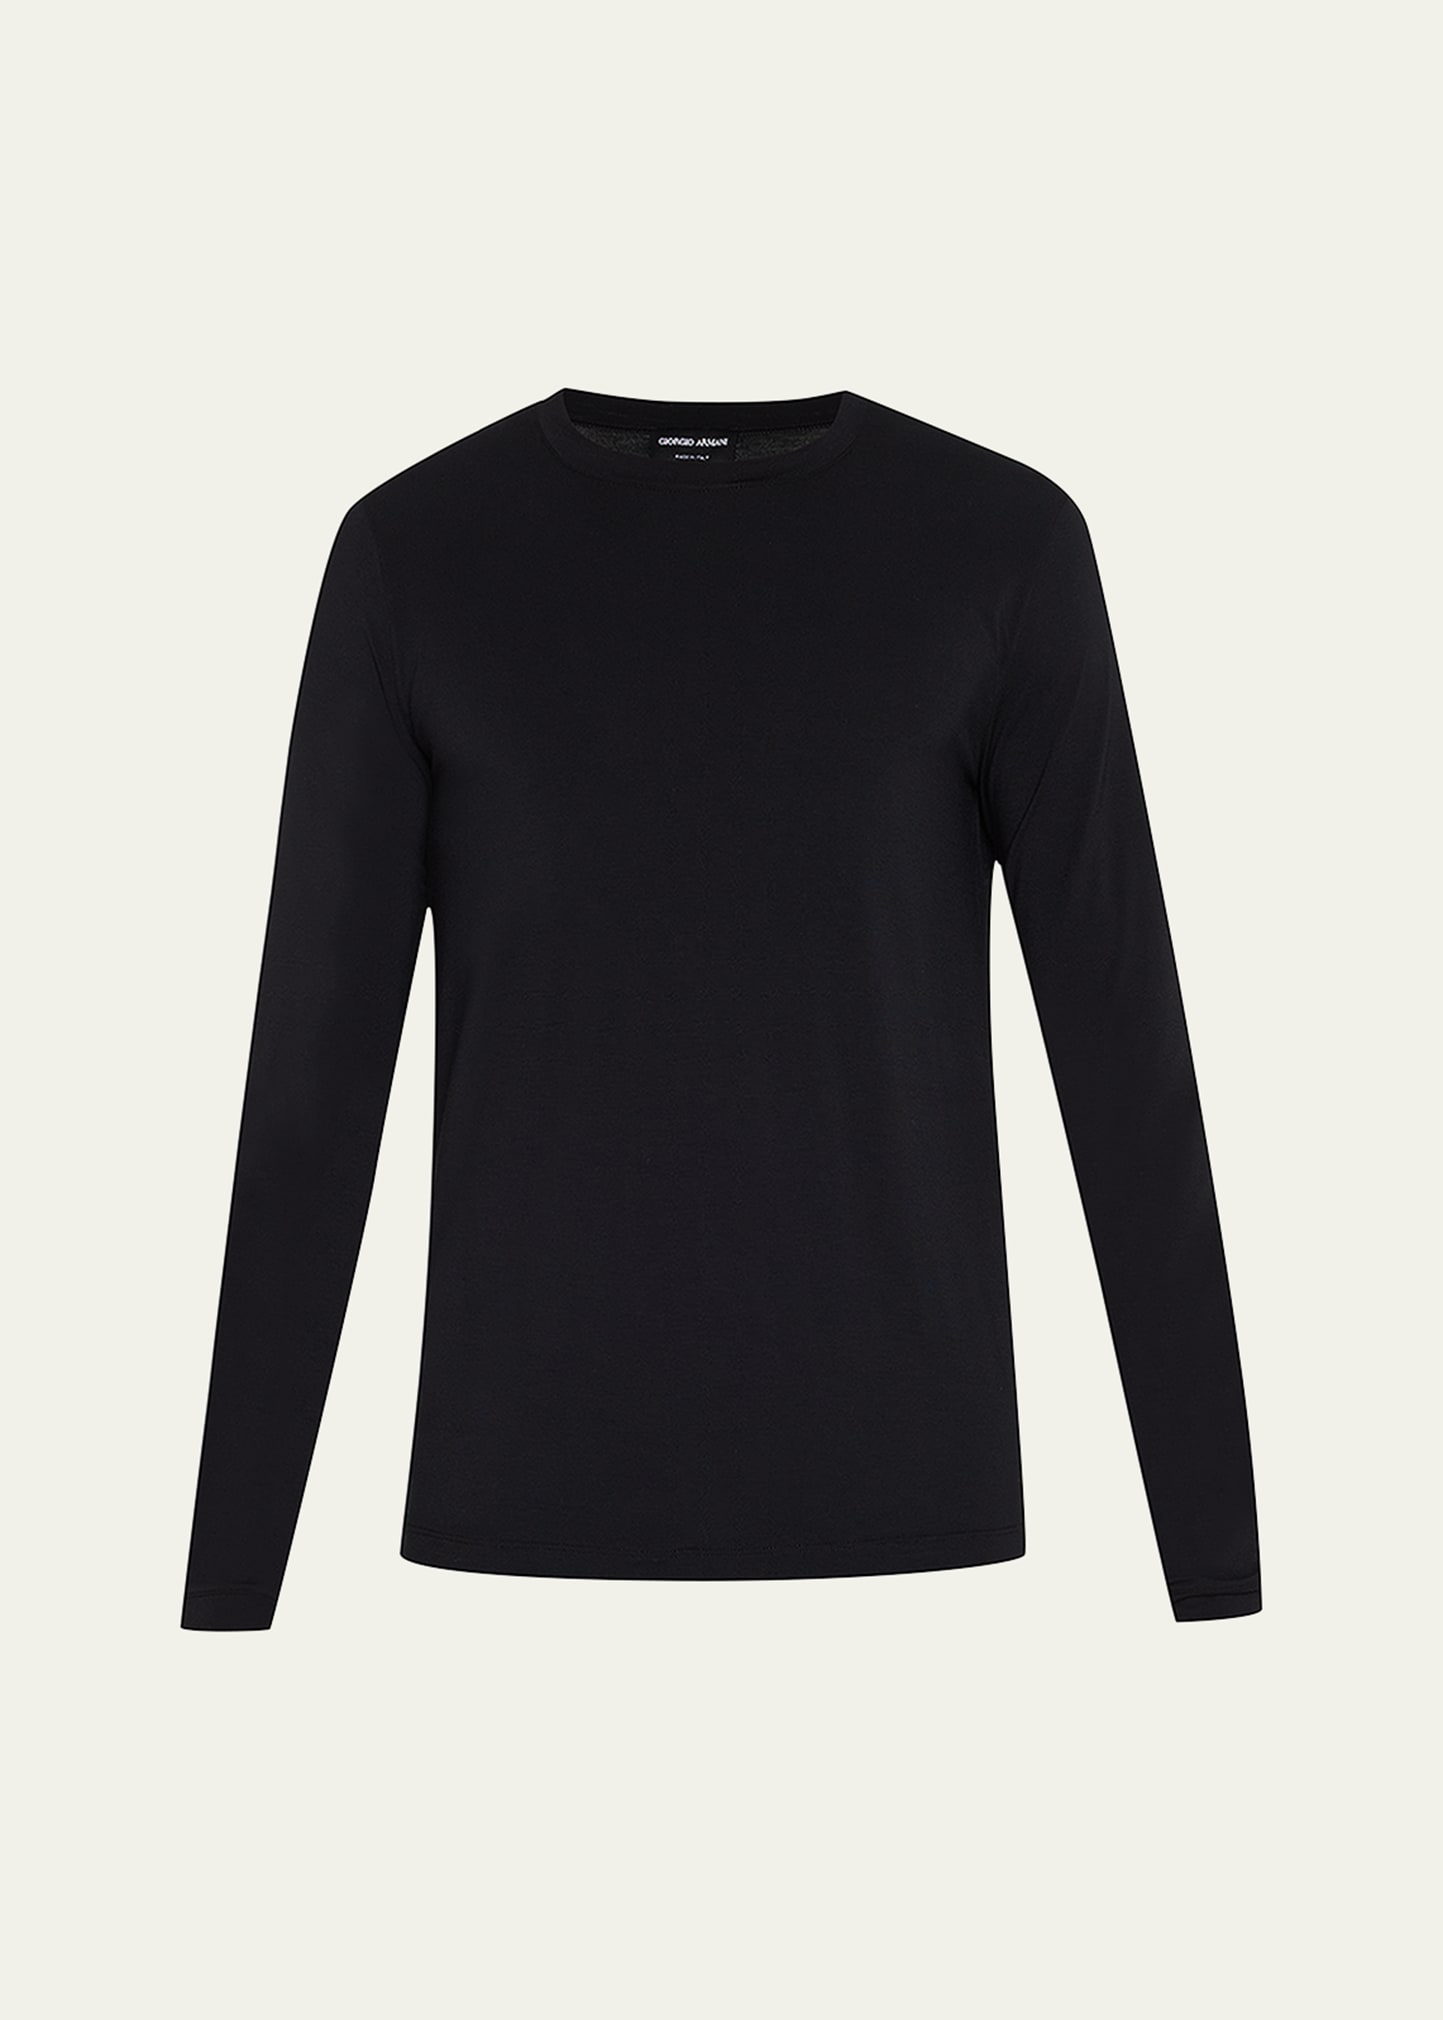 Giorgio Armani Men's Mr. Armani Stretch T-shirt In Solid Black